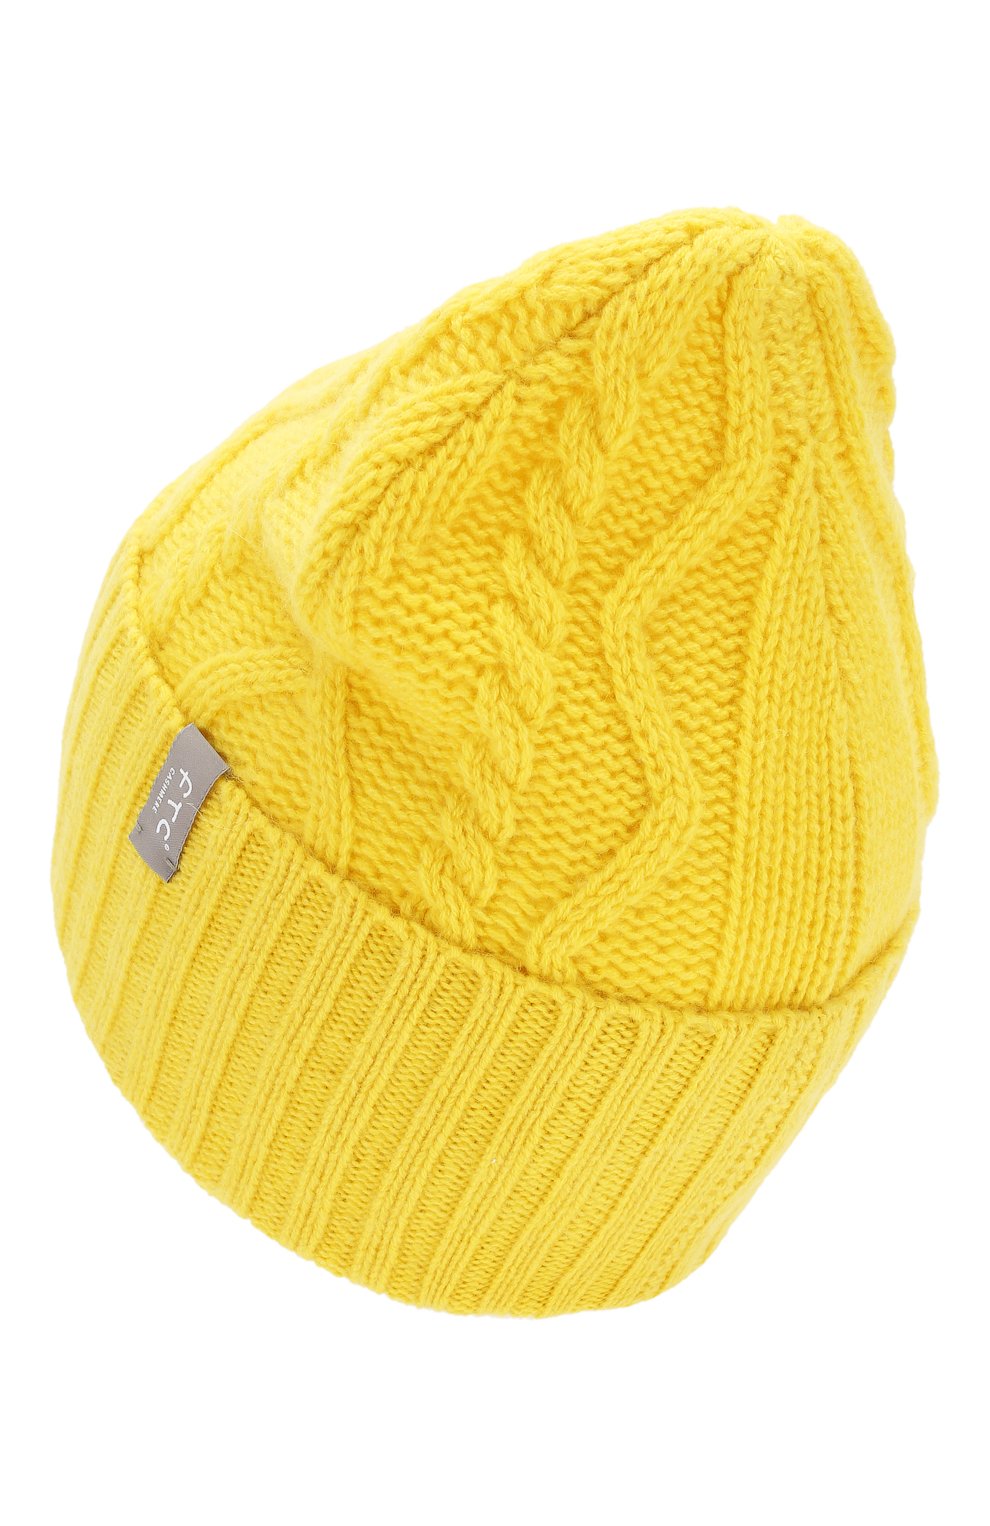 Женская кашемировая шапка FTC желтого цвета, арт. 770-0020 | Фото 2 (Материал: Те кстиль, Кашемир, Шерсть)